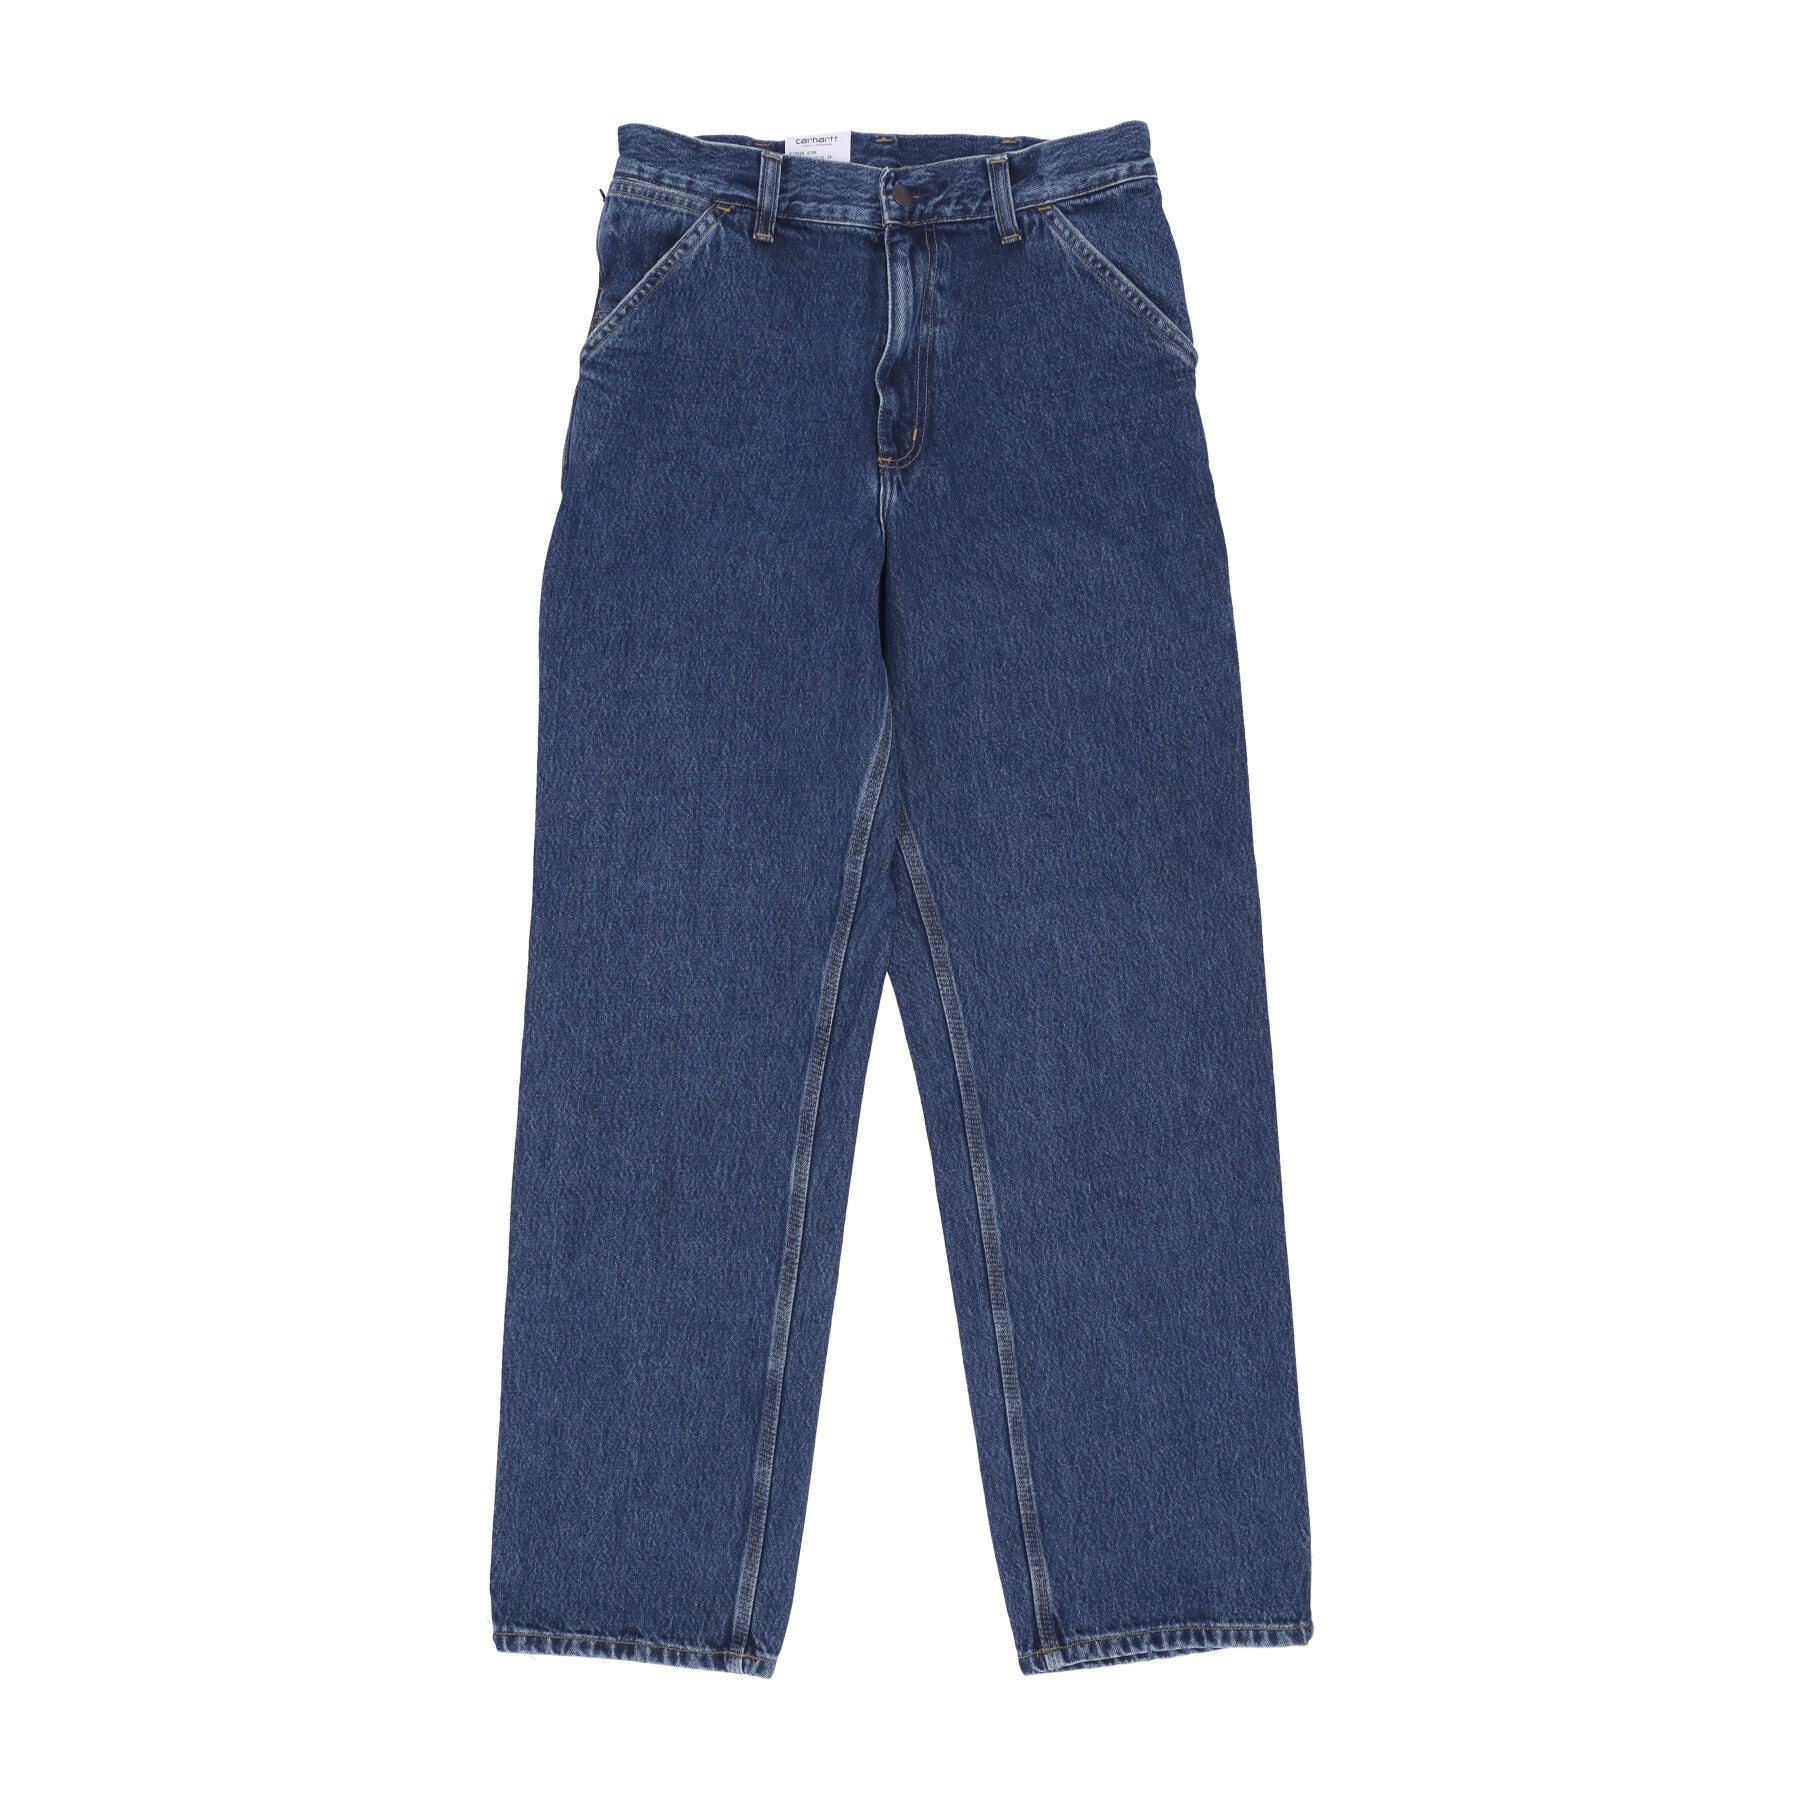 Jeans Uomo Single Knee Pant Blue Stone Washed I032024